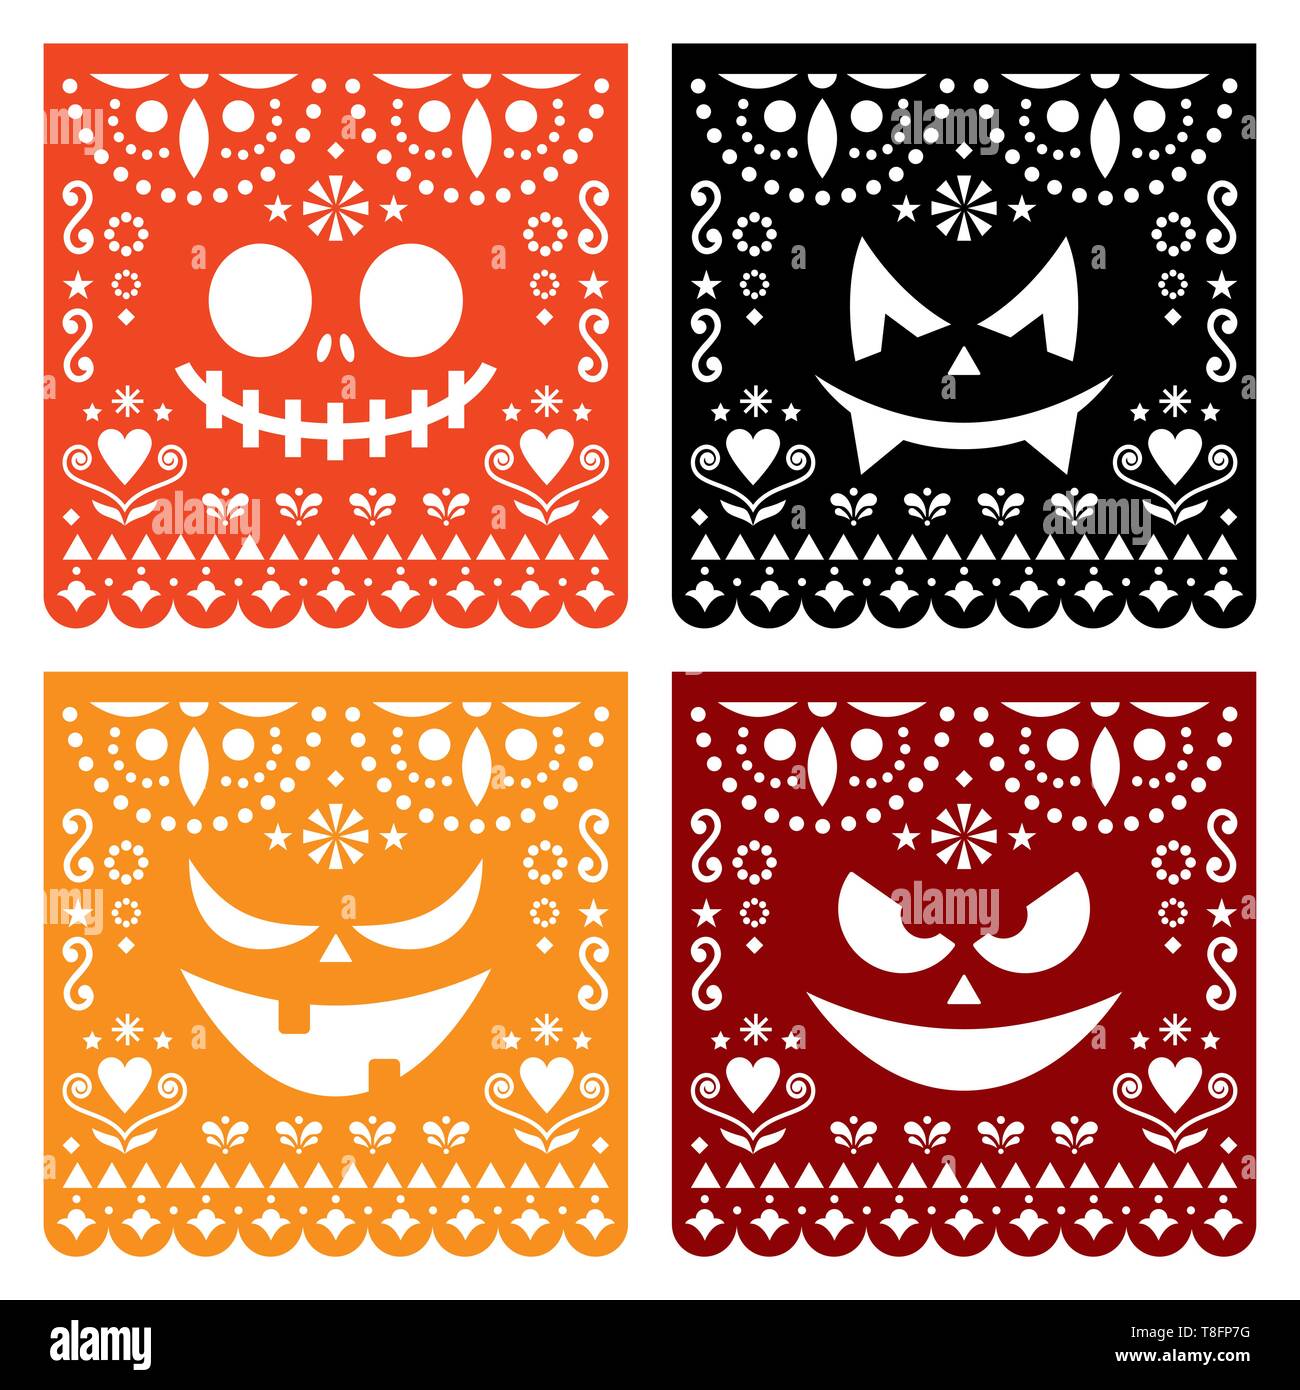 Papel Picado Halloween citrouille avec design scary faces, papier mexicain découper collection pattern - Dia de los Muertos, le Jour des Morts Illustration de Vecteur